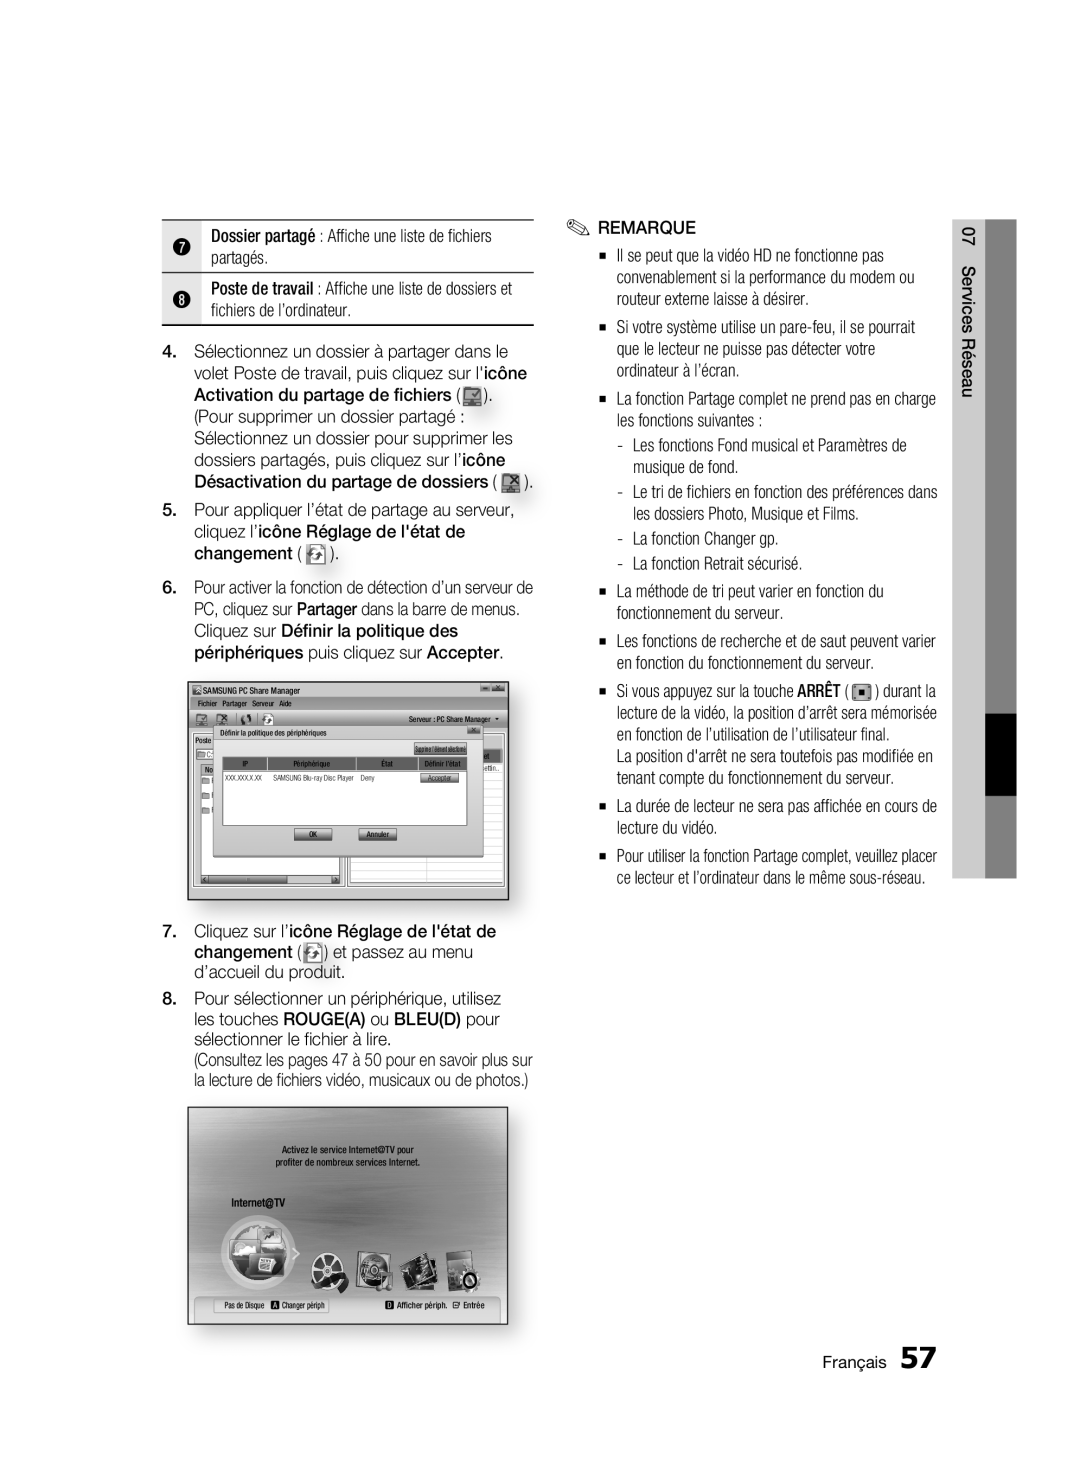 Samsung 01942G-BD-C6300-XAC-0823 user manual Dossier partagé Affiche une liste de fichiers, Services Réseau, Français 